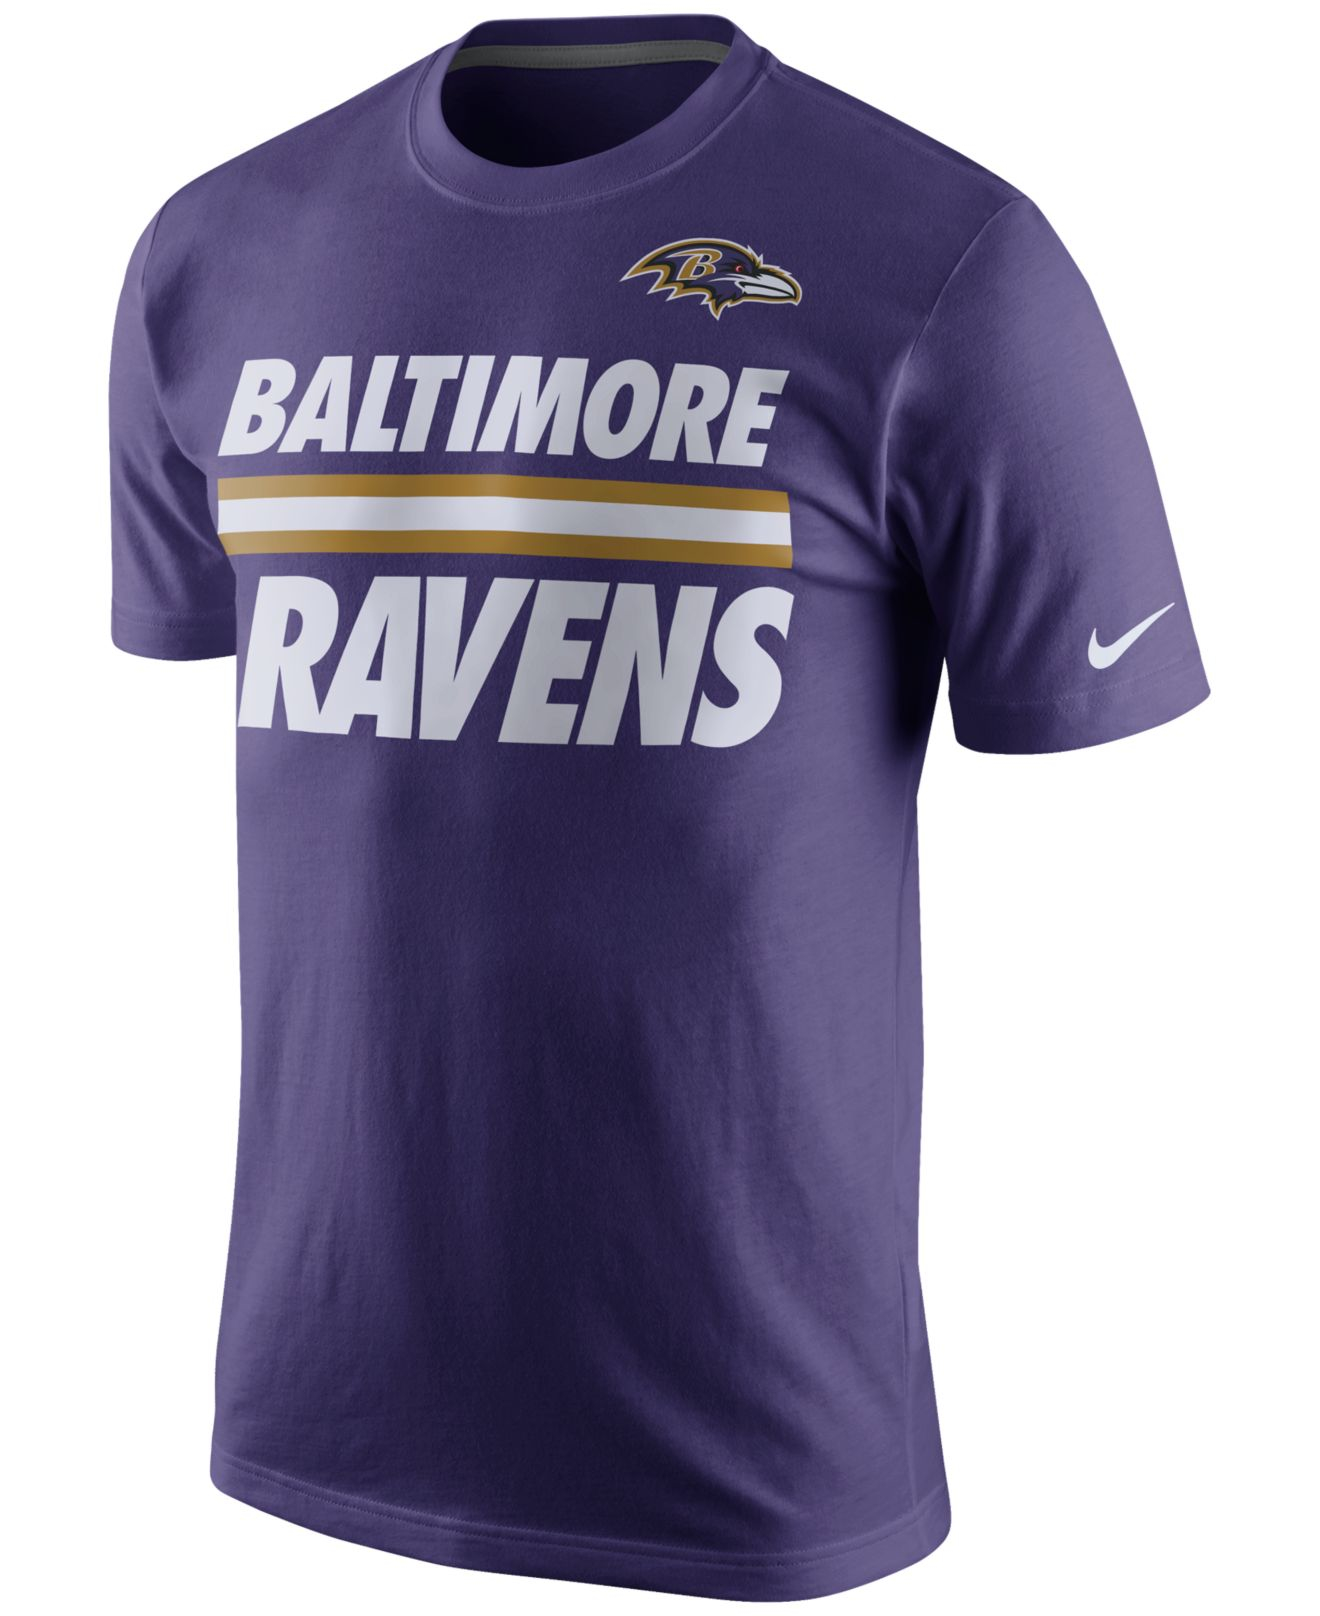 Lyst - Nike Men's Baltimore Ravens Team Stripe T-shirt in Purple for Men